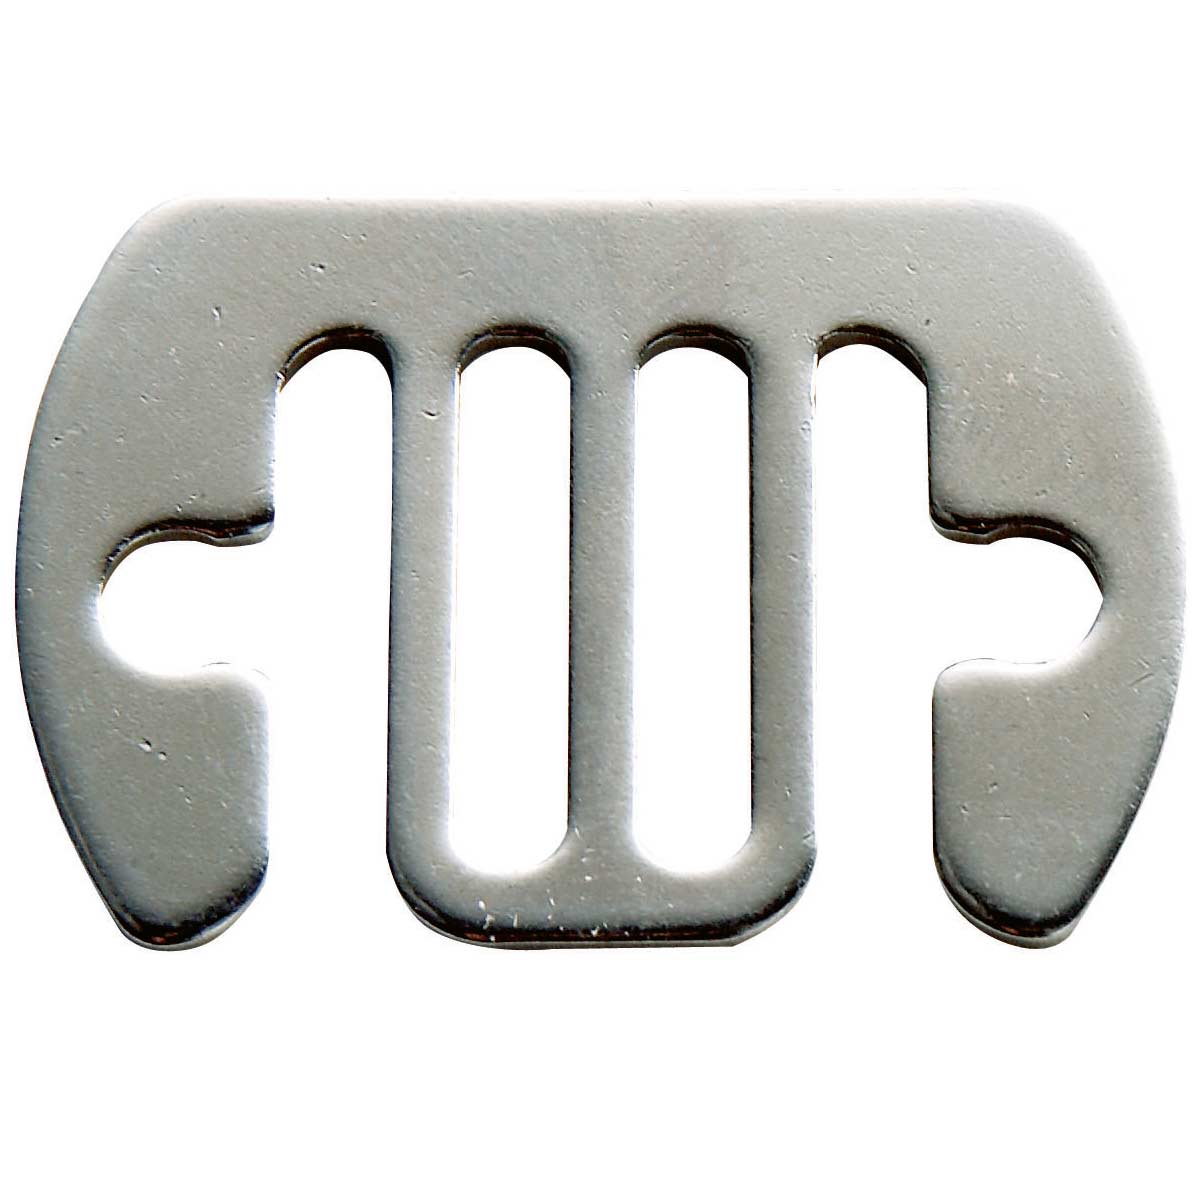 5x csuklós csatlakozólemez 10-20 mm